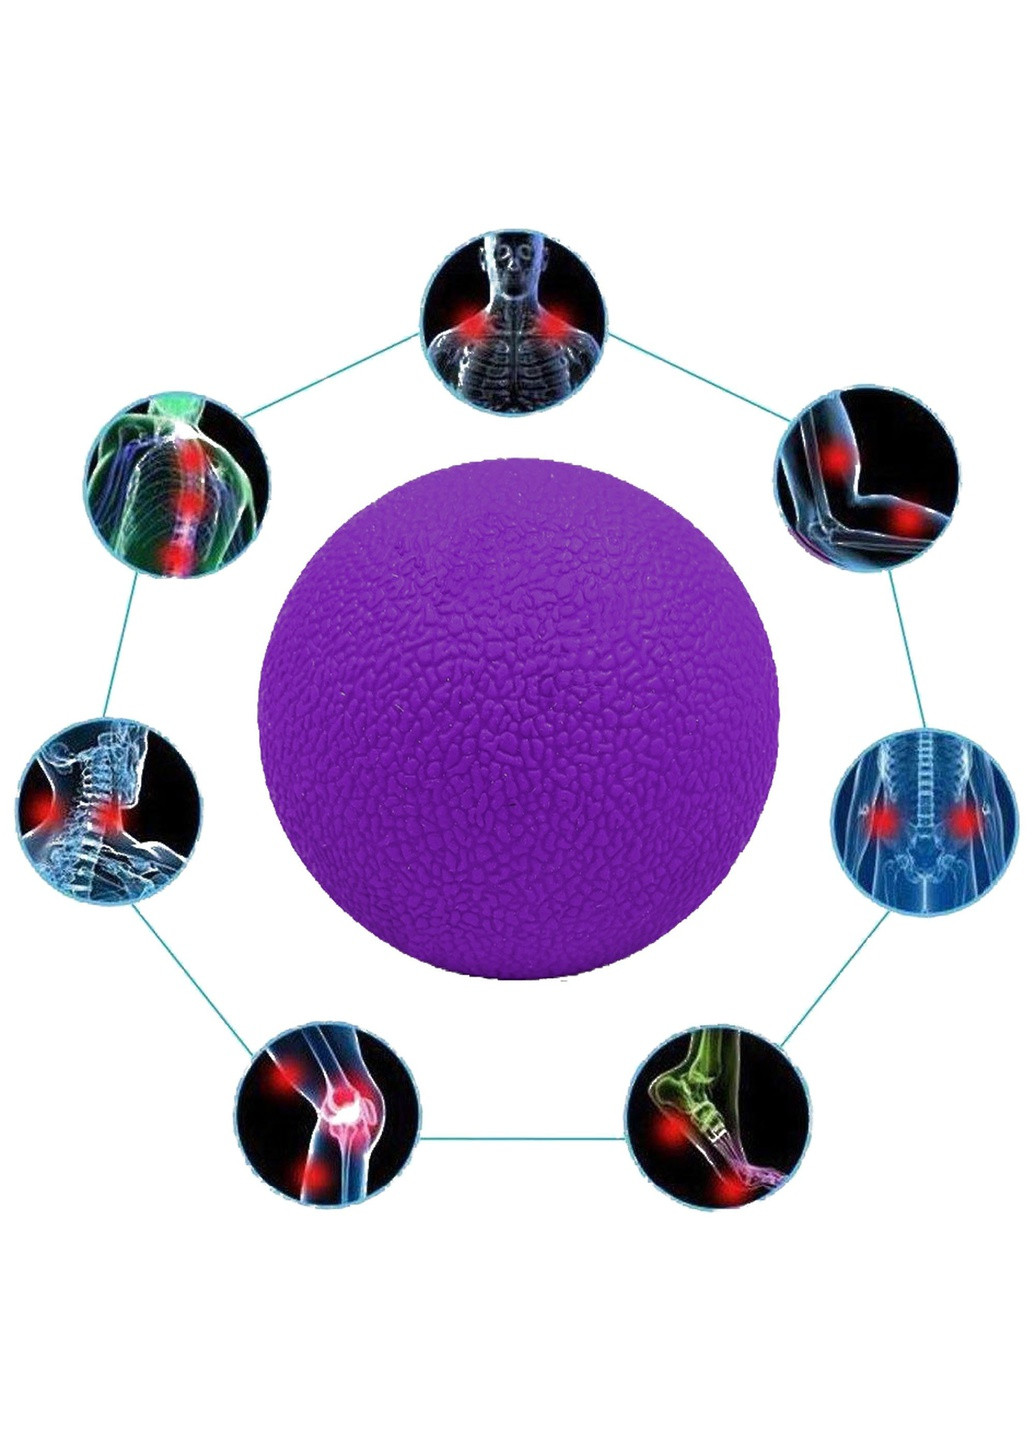 Масажний м'ячик TPR 6 см фіолетовий (м'яч для масажу, міофасціального релізу і самомасажу) EF-MO6-V EasyFit (243205419)